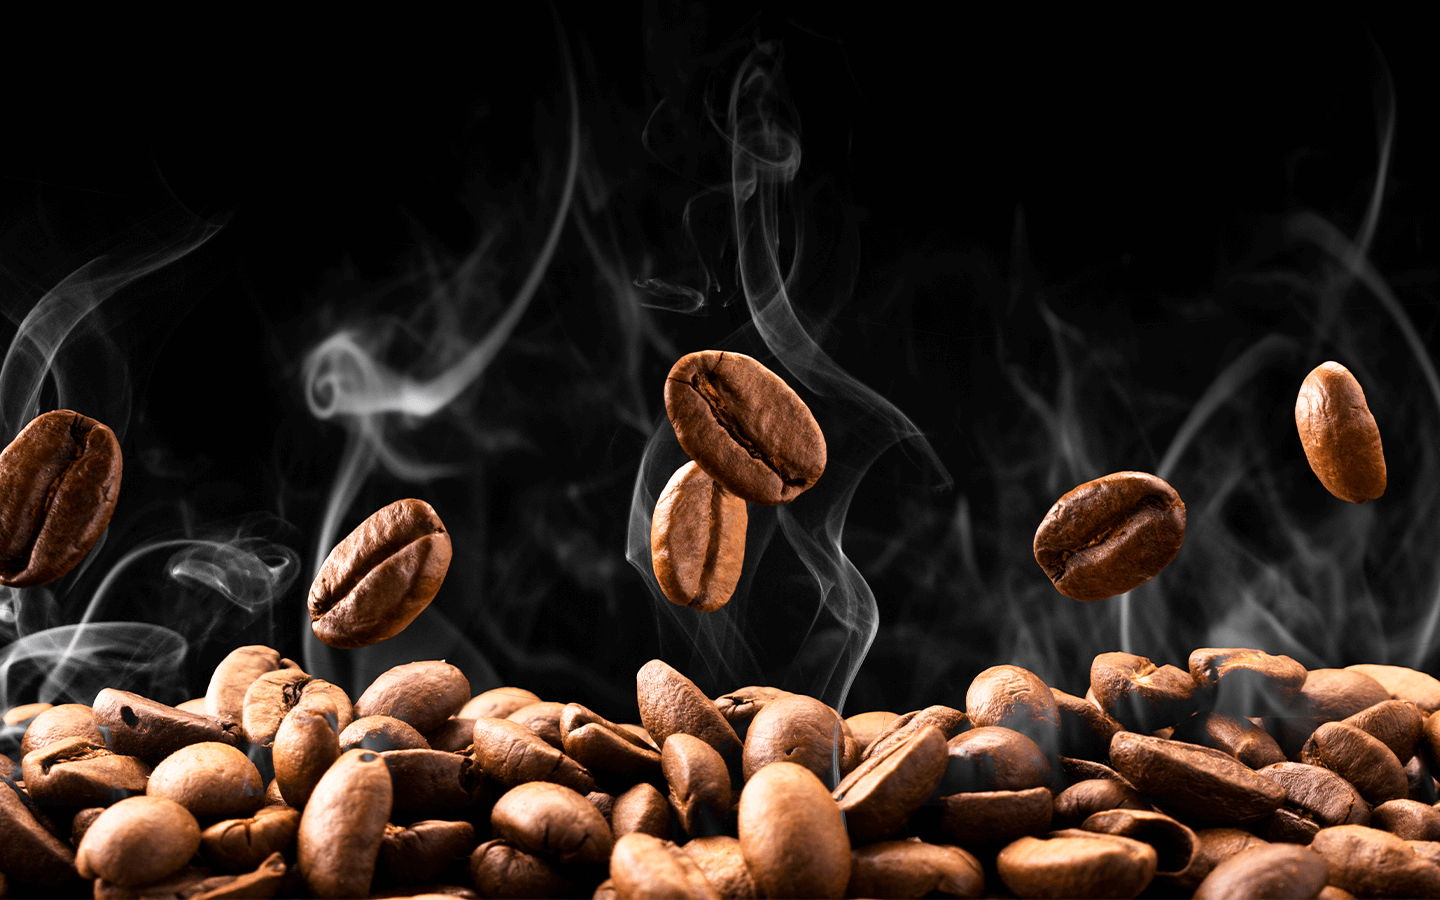 Espress Yourself: Pasado, presente y futuro de la cafeína